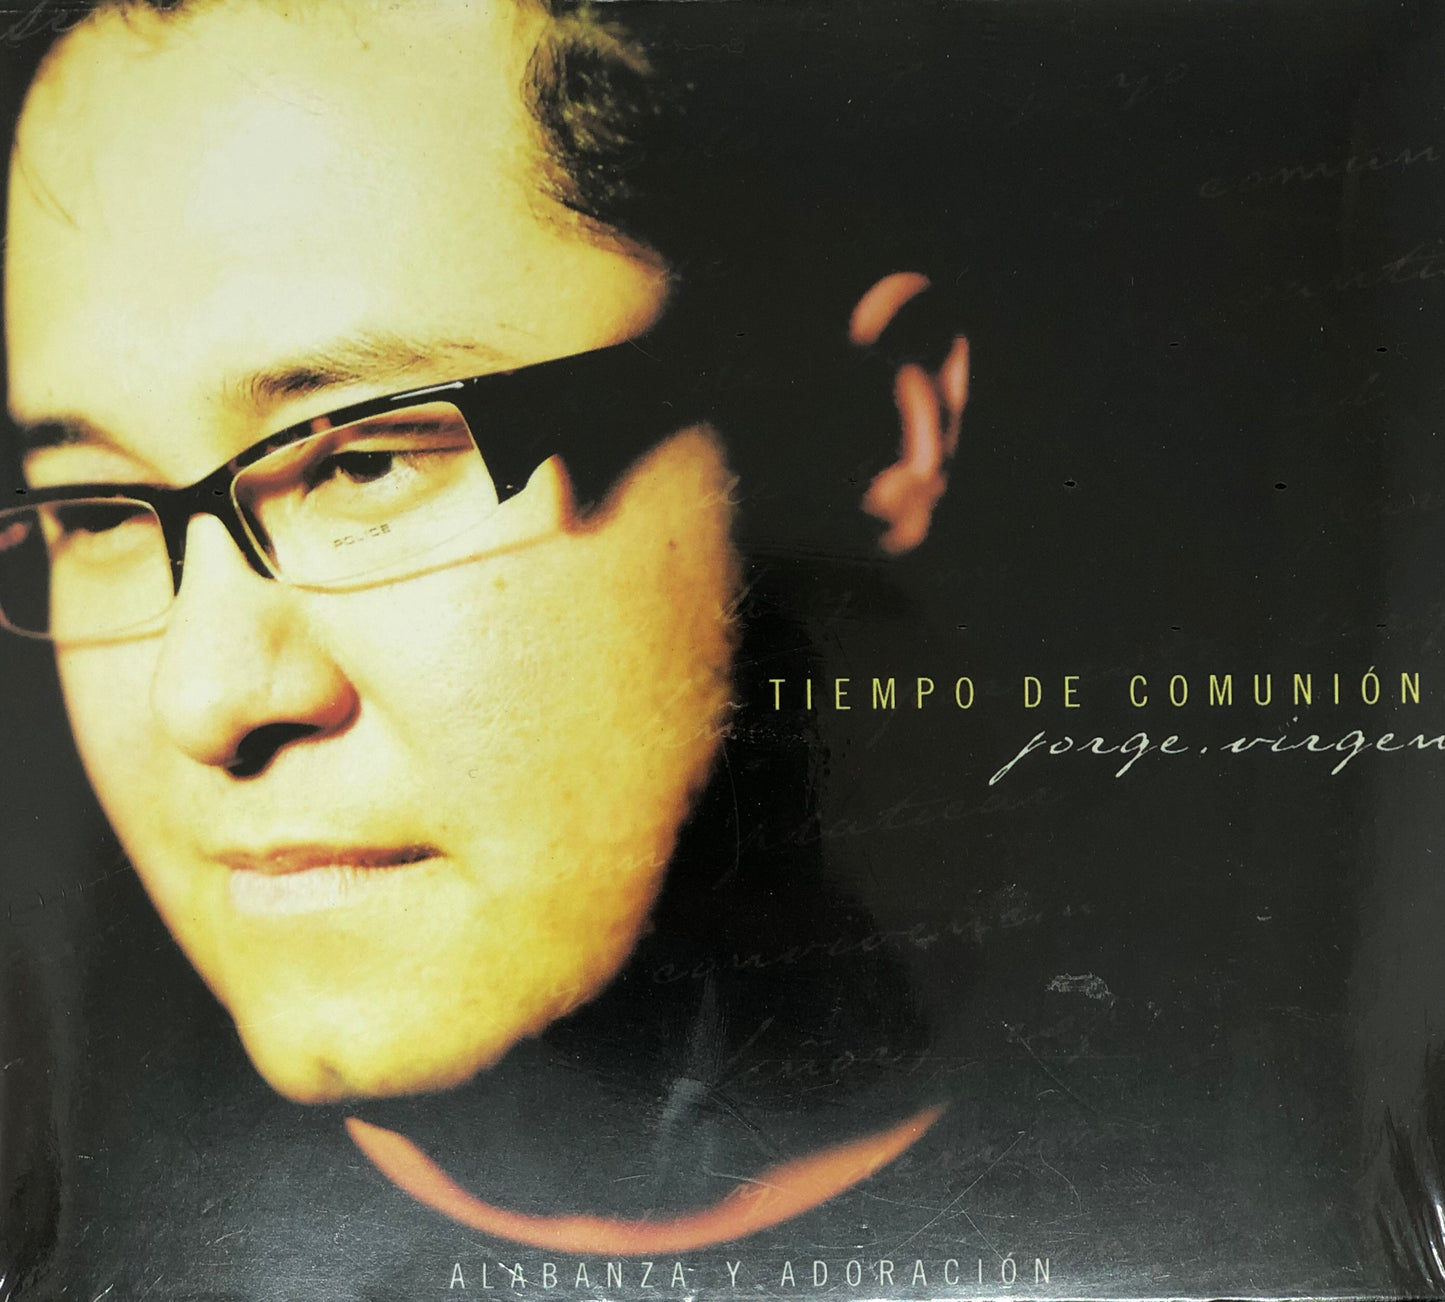 CD - Tiempo de Comunion - Jorge Virgen - Alabanza y Adoracion